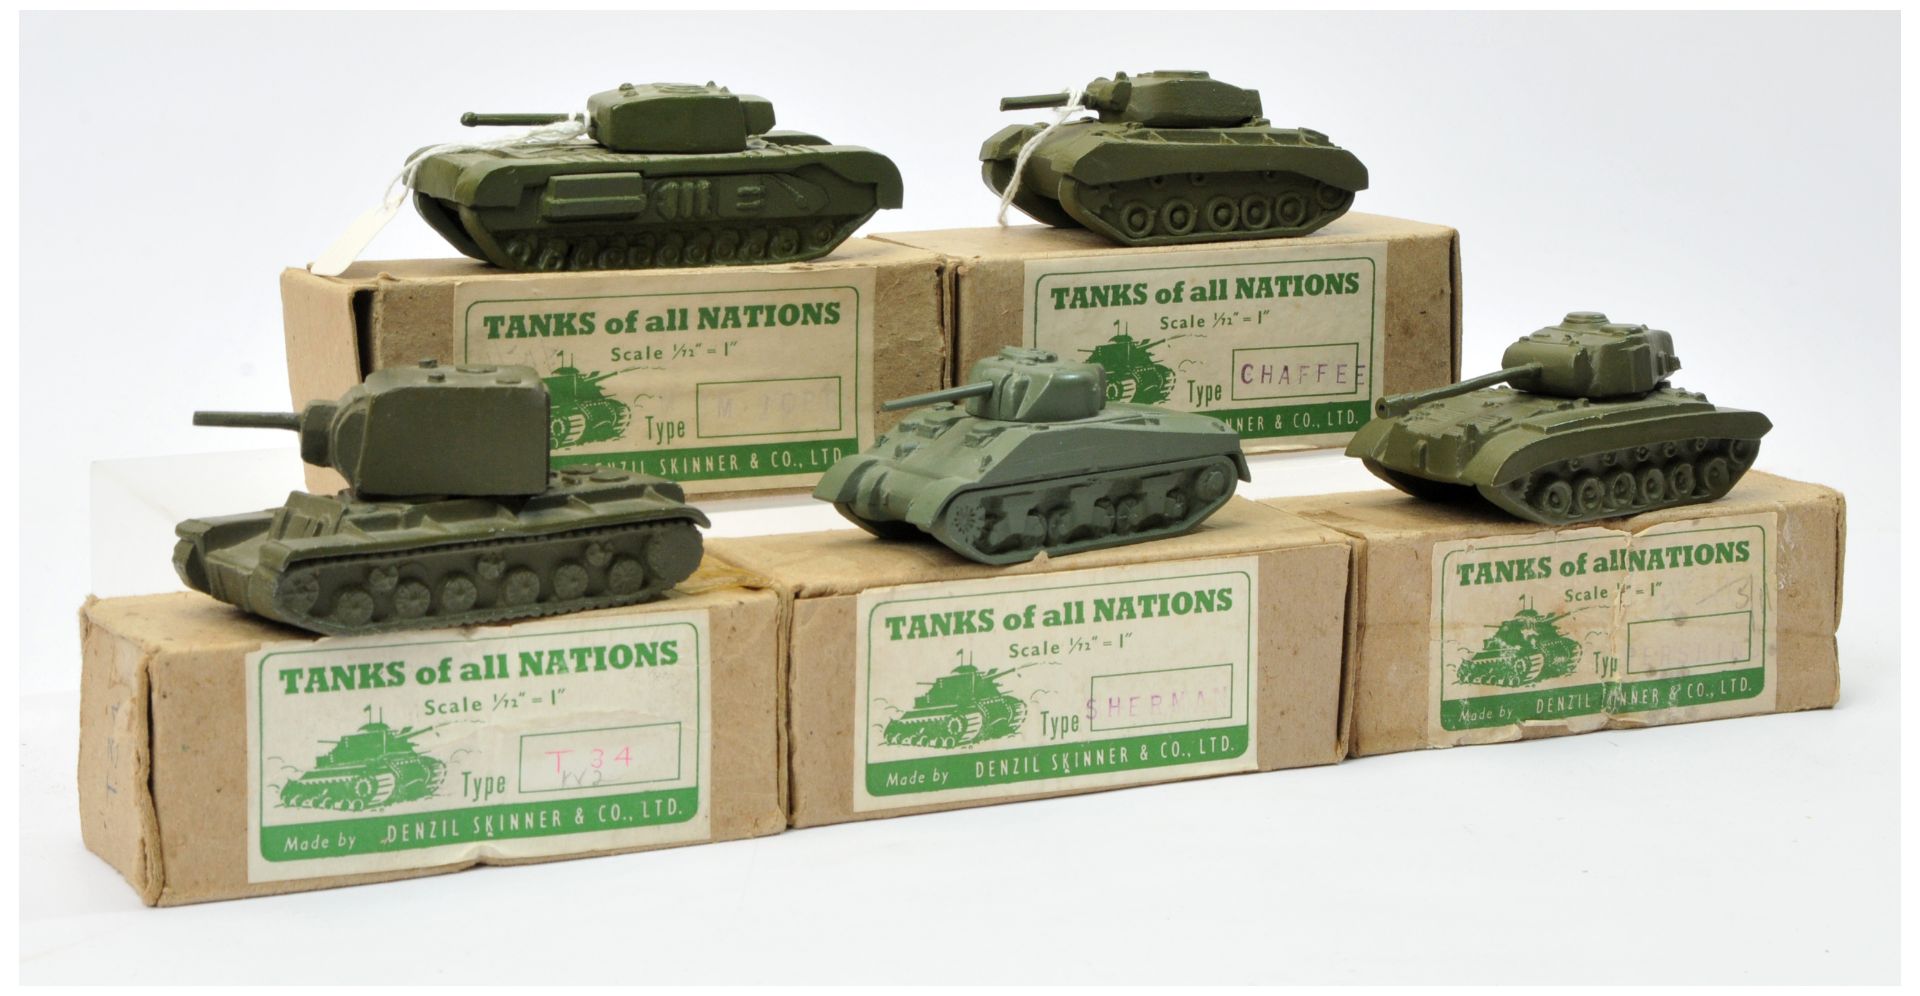 Denzil Skinner & Co Ltd "Tanks of all Nations" series - Group of 5 X Tanks larger scale 